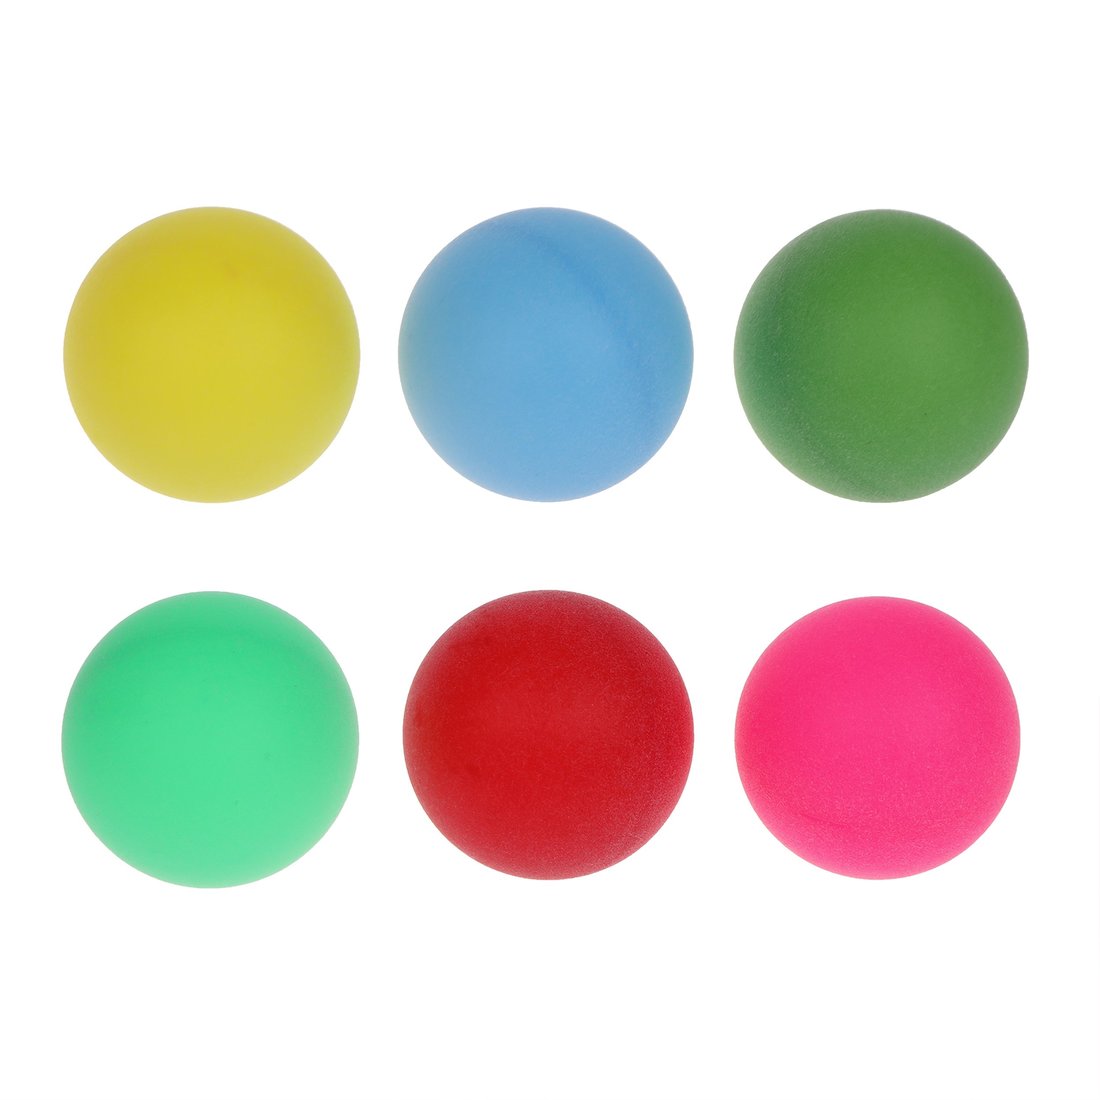 Шарики для настольного тенниса 636179 цветные в наборе 6шт в пакете - Орск 